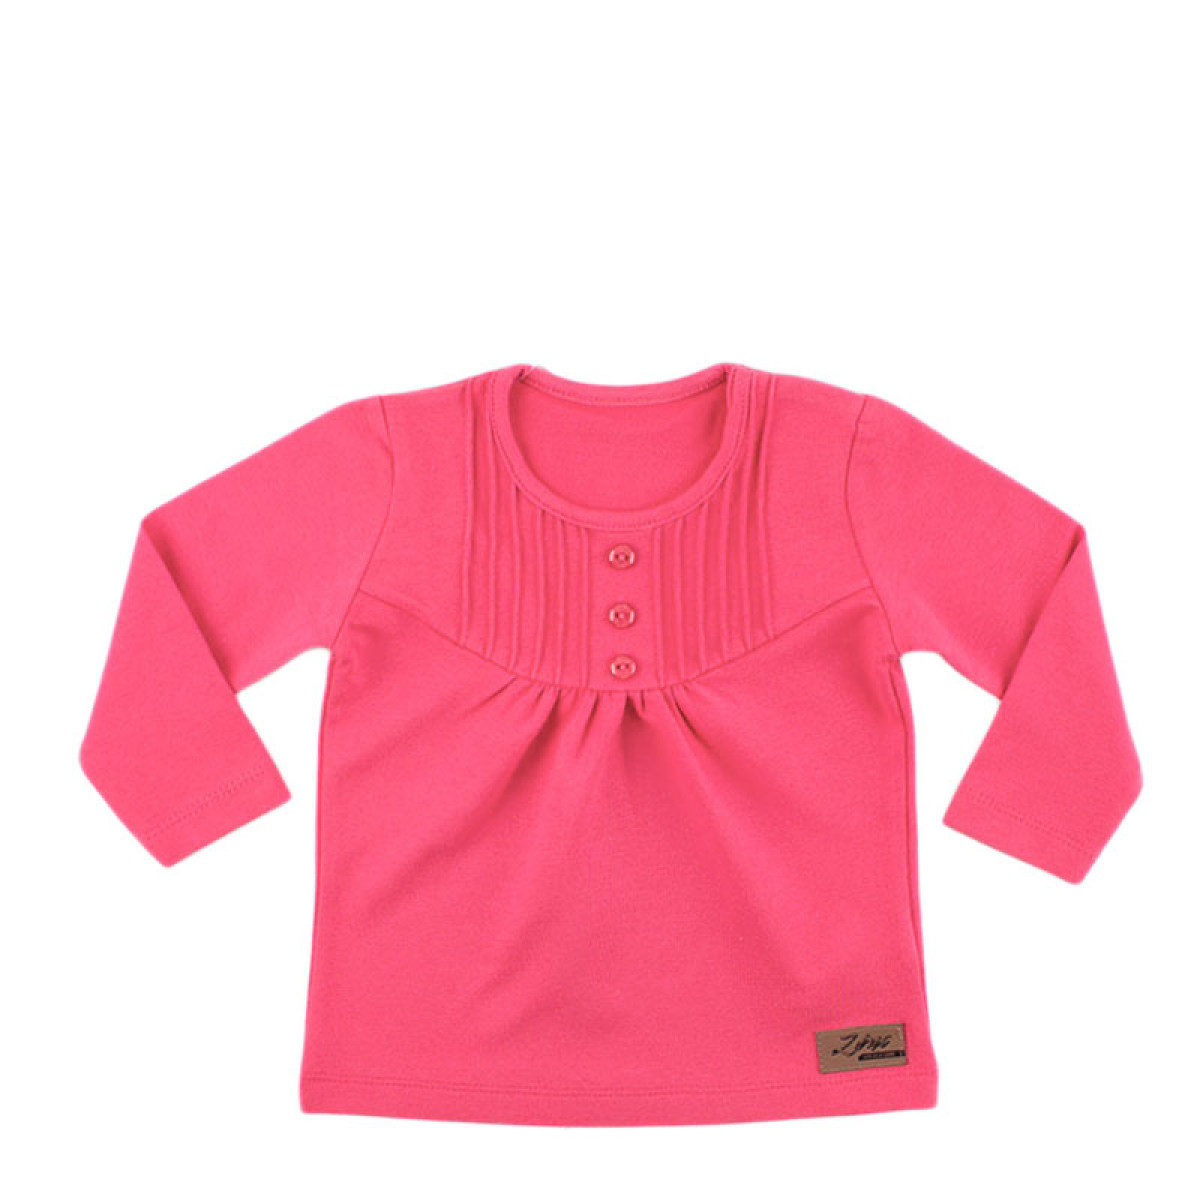 Бебешка блузка за момичета в цвят корал (6 - 24 мес.)